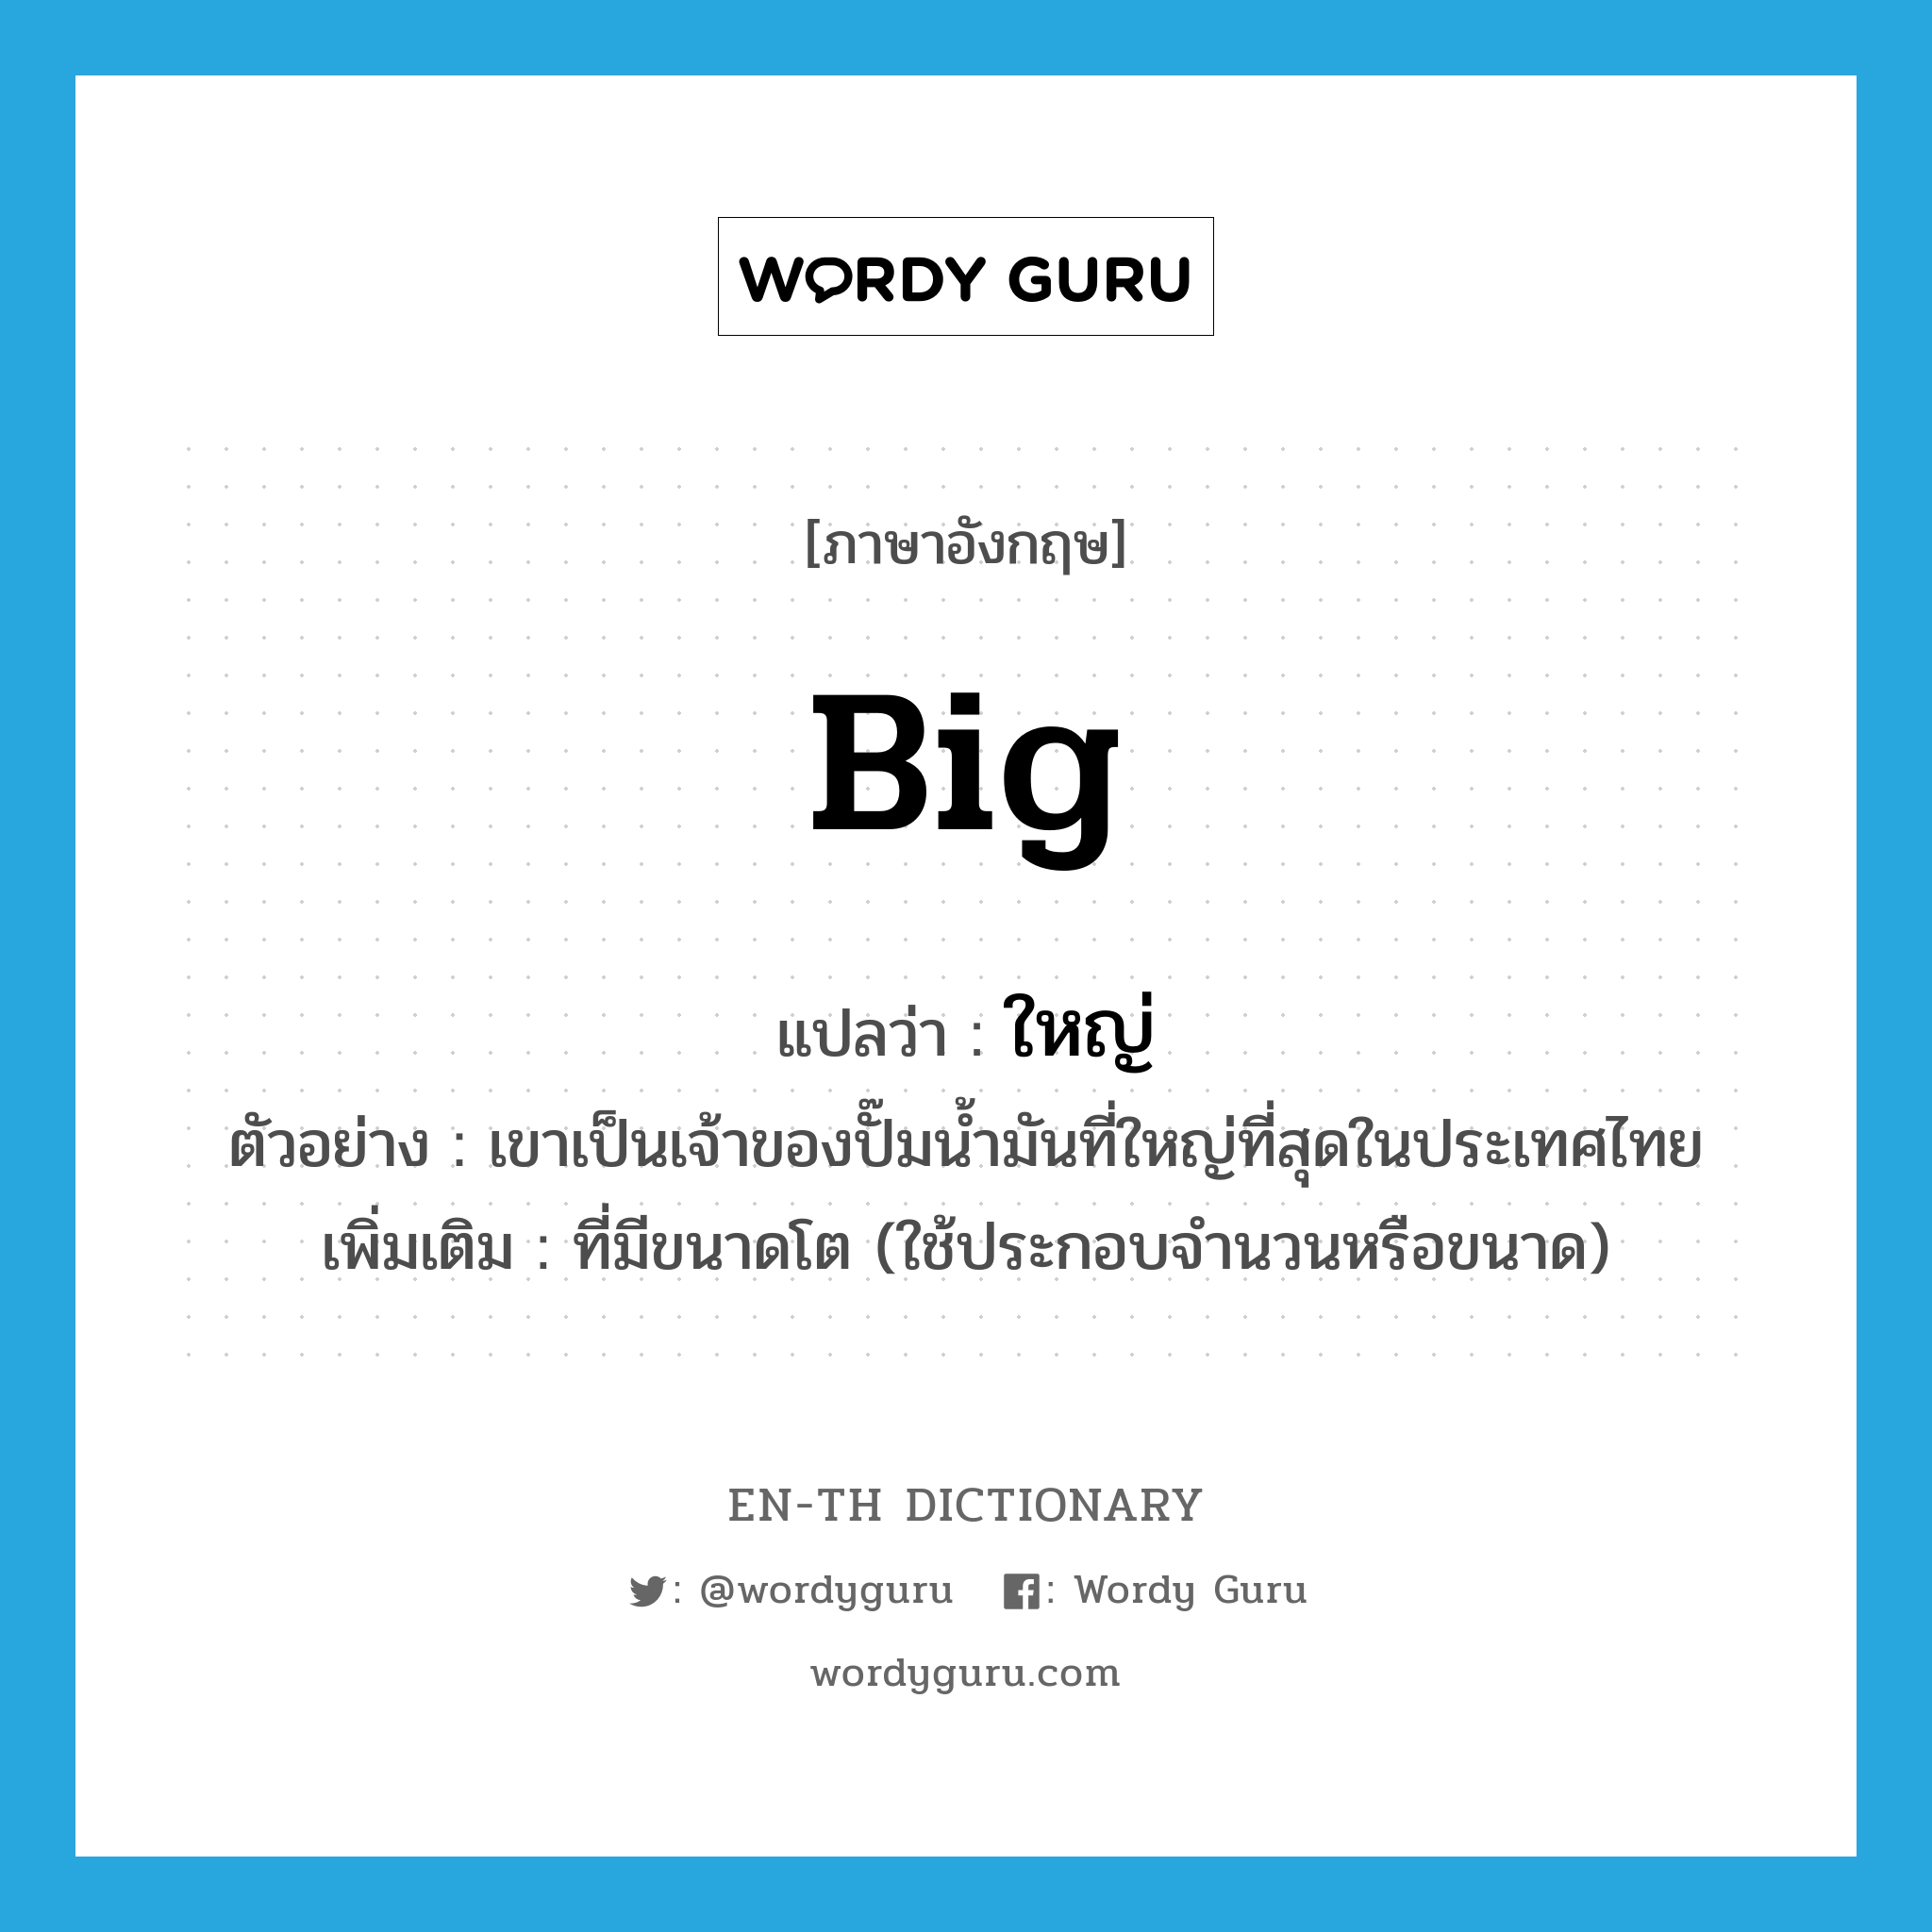 ใหญ่ ภาษาอังกฤษ?, คำศัพท์ภาษาอังกฤษ ใหญ่ แปลว่า big ประเภท ADJ ตัวอย่าง เขาเป็นเจ้าของปั๊มน้ำมันที่ใหญ่ที่สุดในประเทศไทย เพิ่มเติม ที่มีขนาดโต (ใช้ประกอบจำนวนหรือขนาด) หมวด ADJ